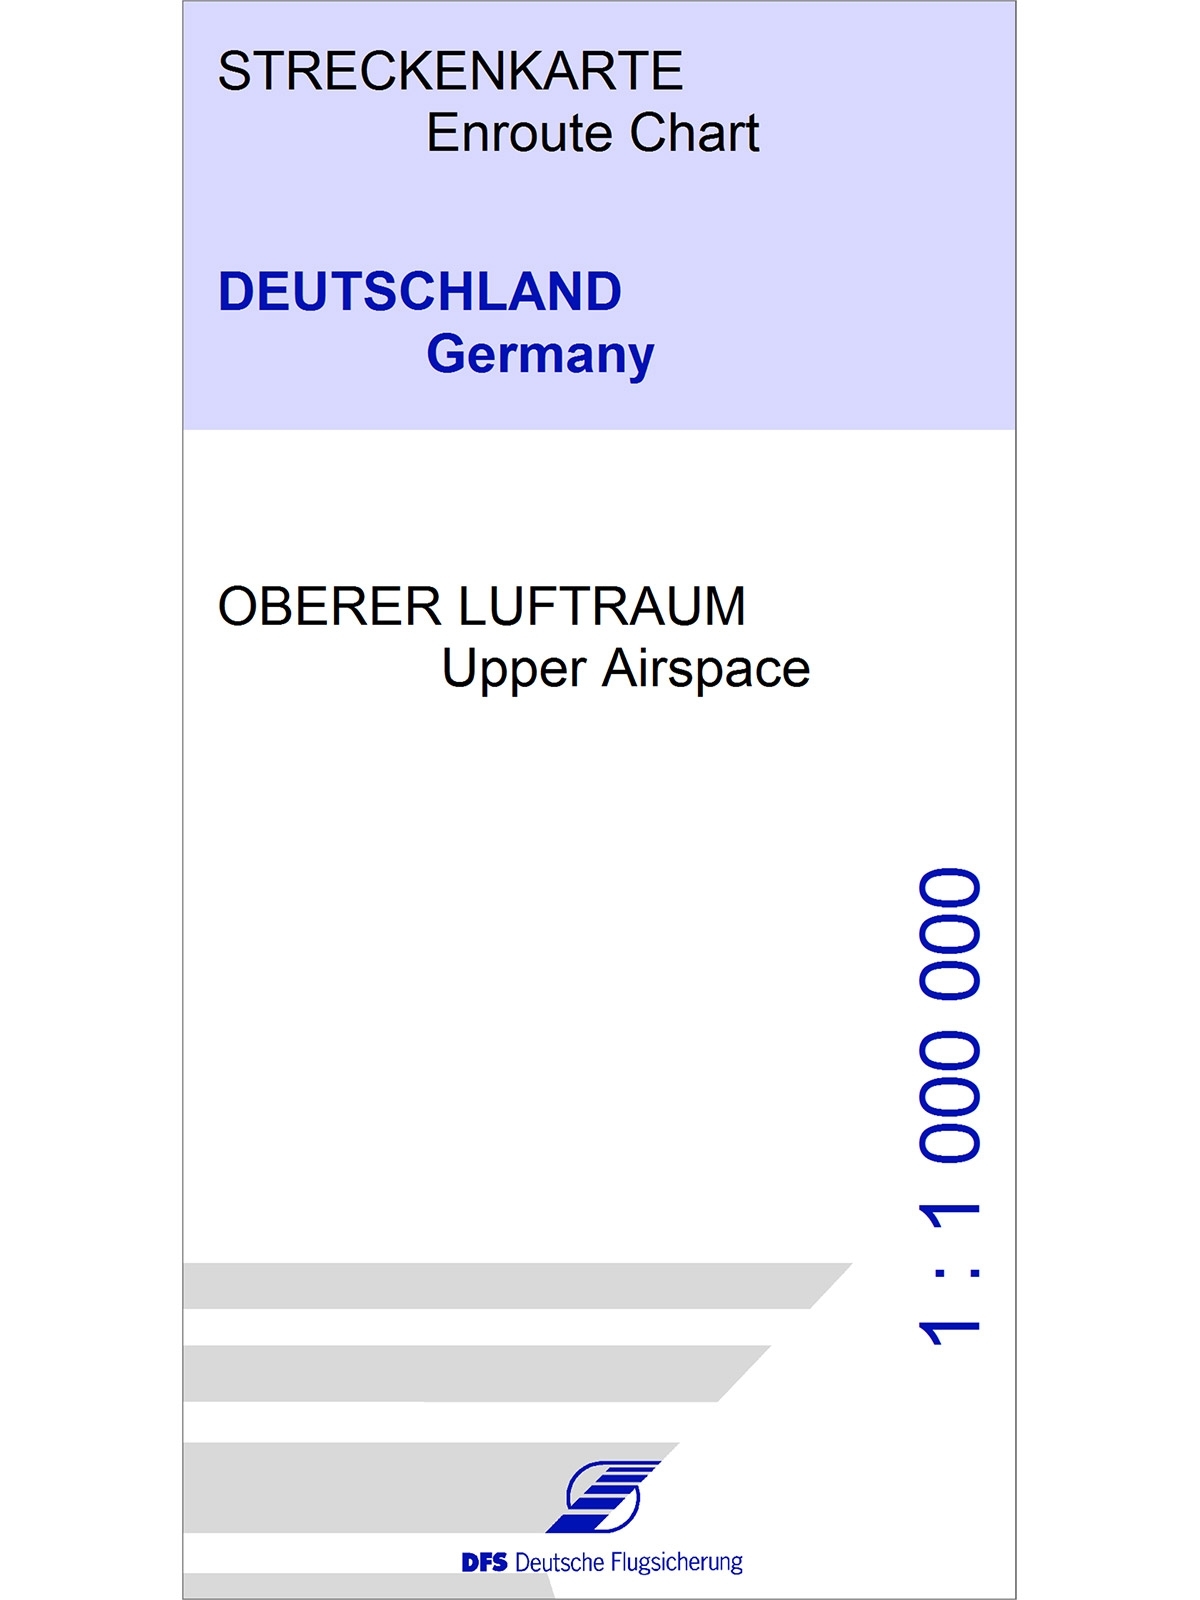 IFR-Streckenkarte Deutschland - Oberer Luftraum / Unterer Luftraum, FIS-Gebiete (13JUL2023), 1:1.000.000